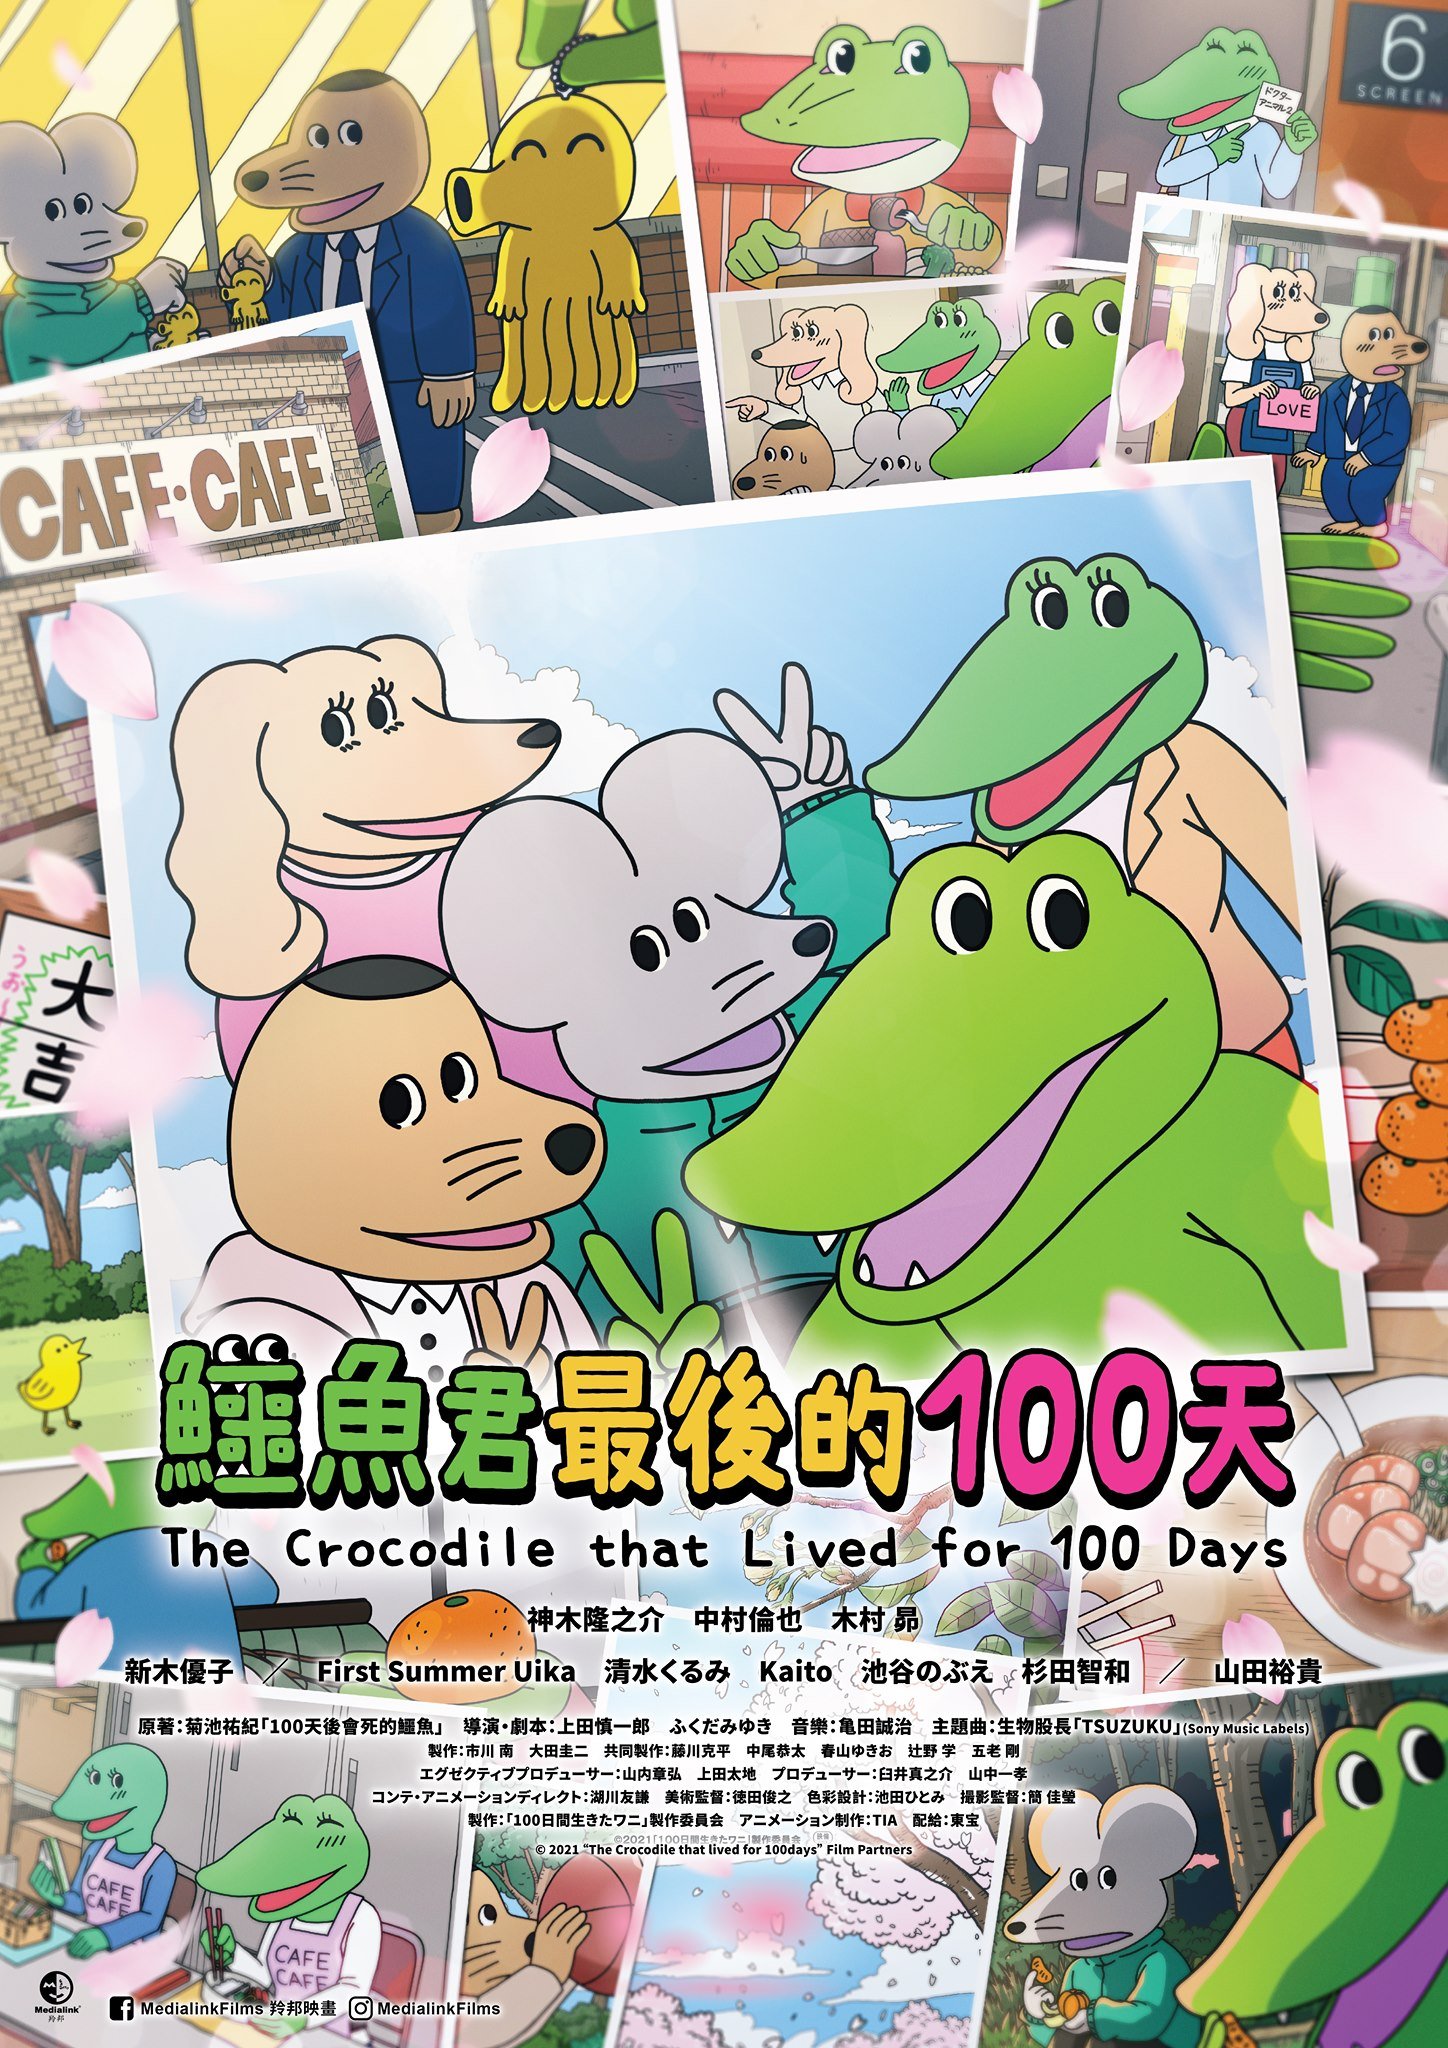 鱷魚君最後的100天 (粵語版)電影圖片 - poster_1624621382.jpg